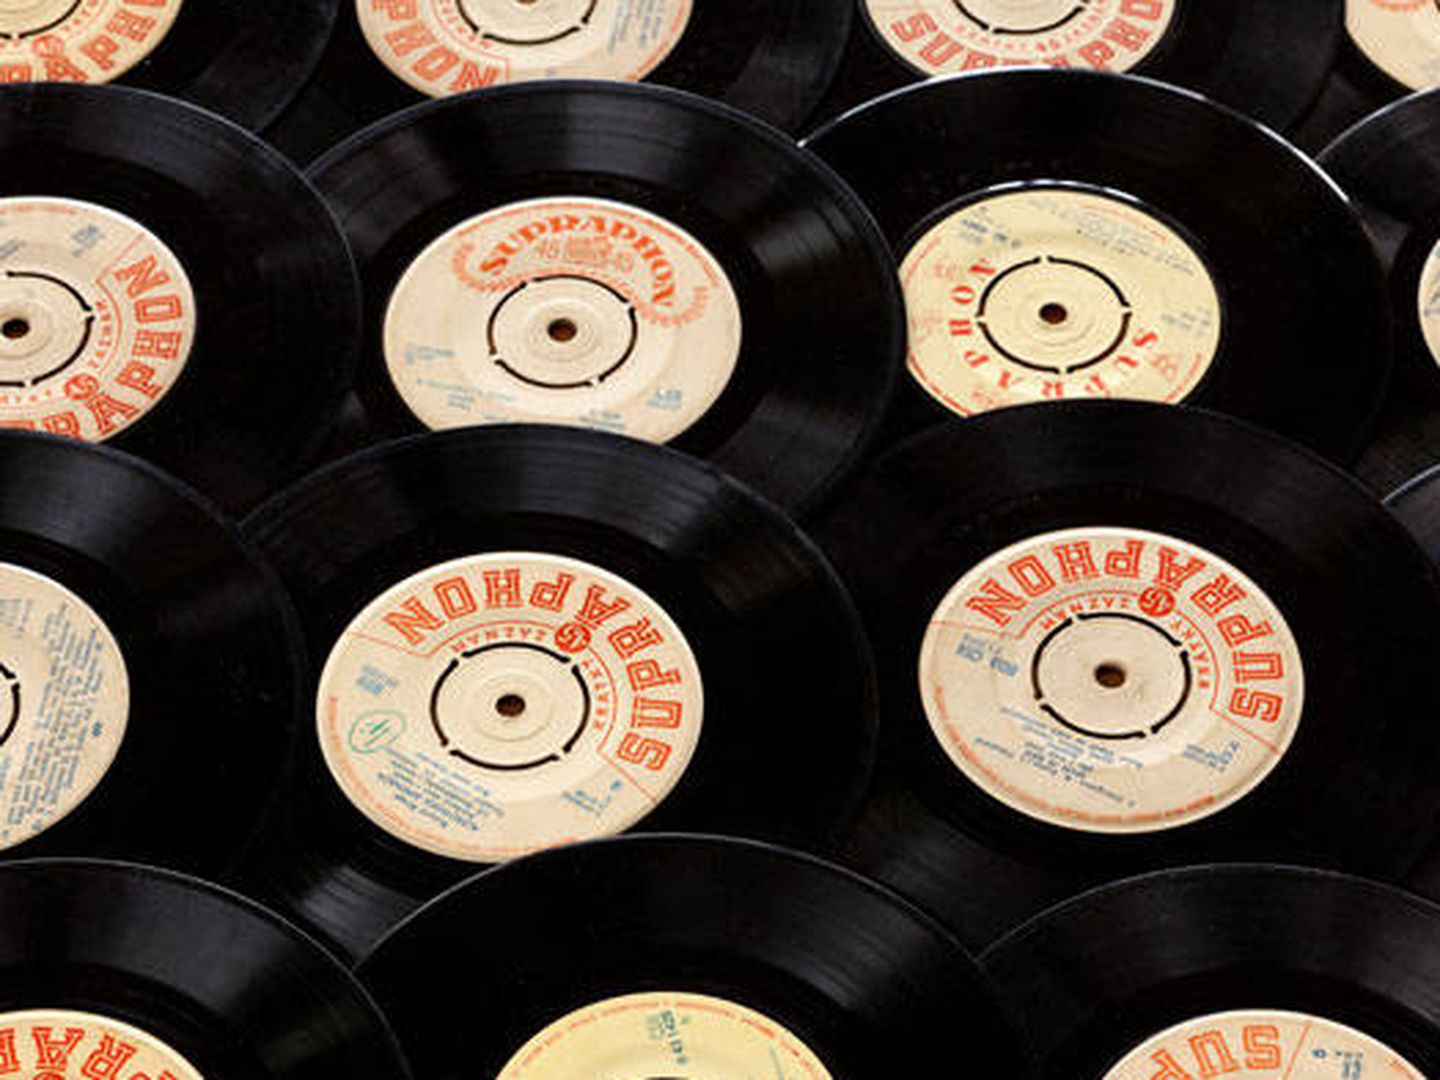 Los discos de vinilo rompen récords de ventas